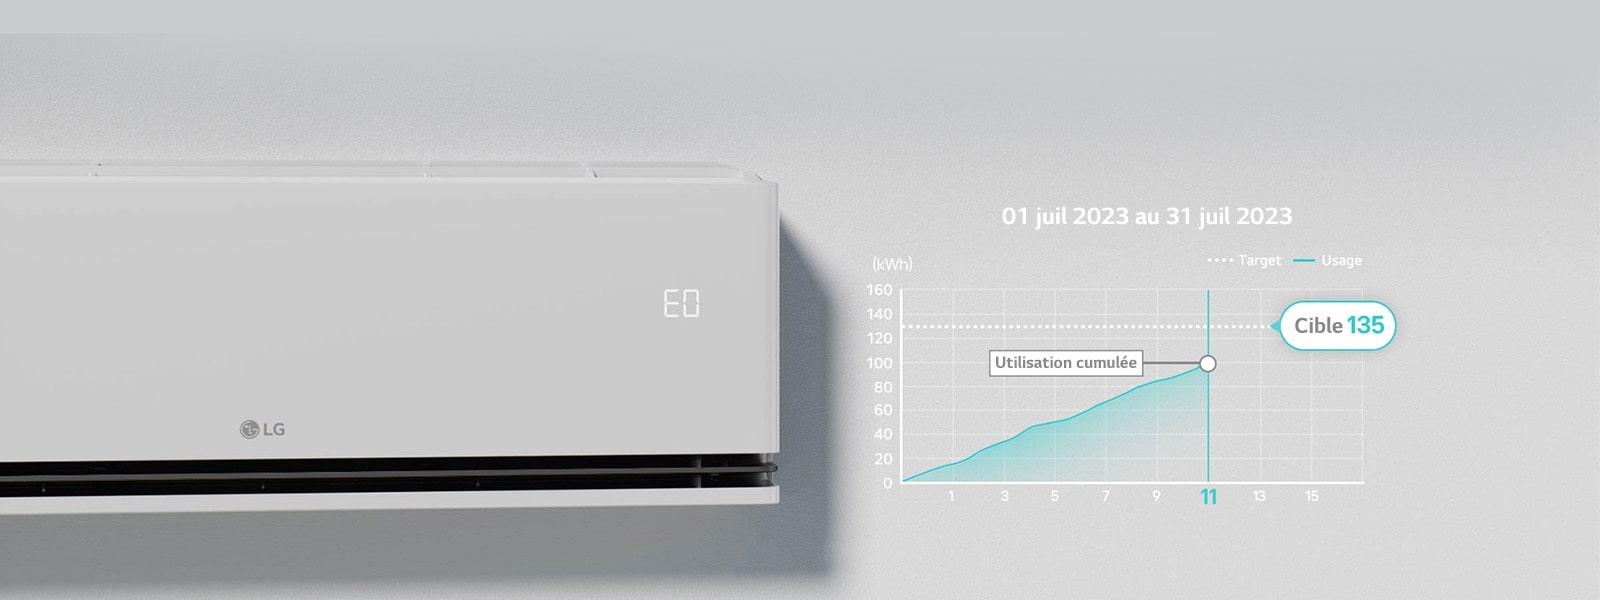 '« EO » est selectionné sur le panneau du climatiseur quand la fonction kW Manager est en opération.